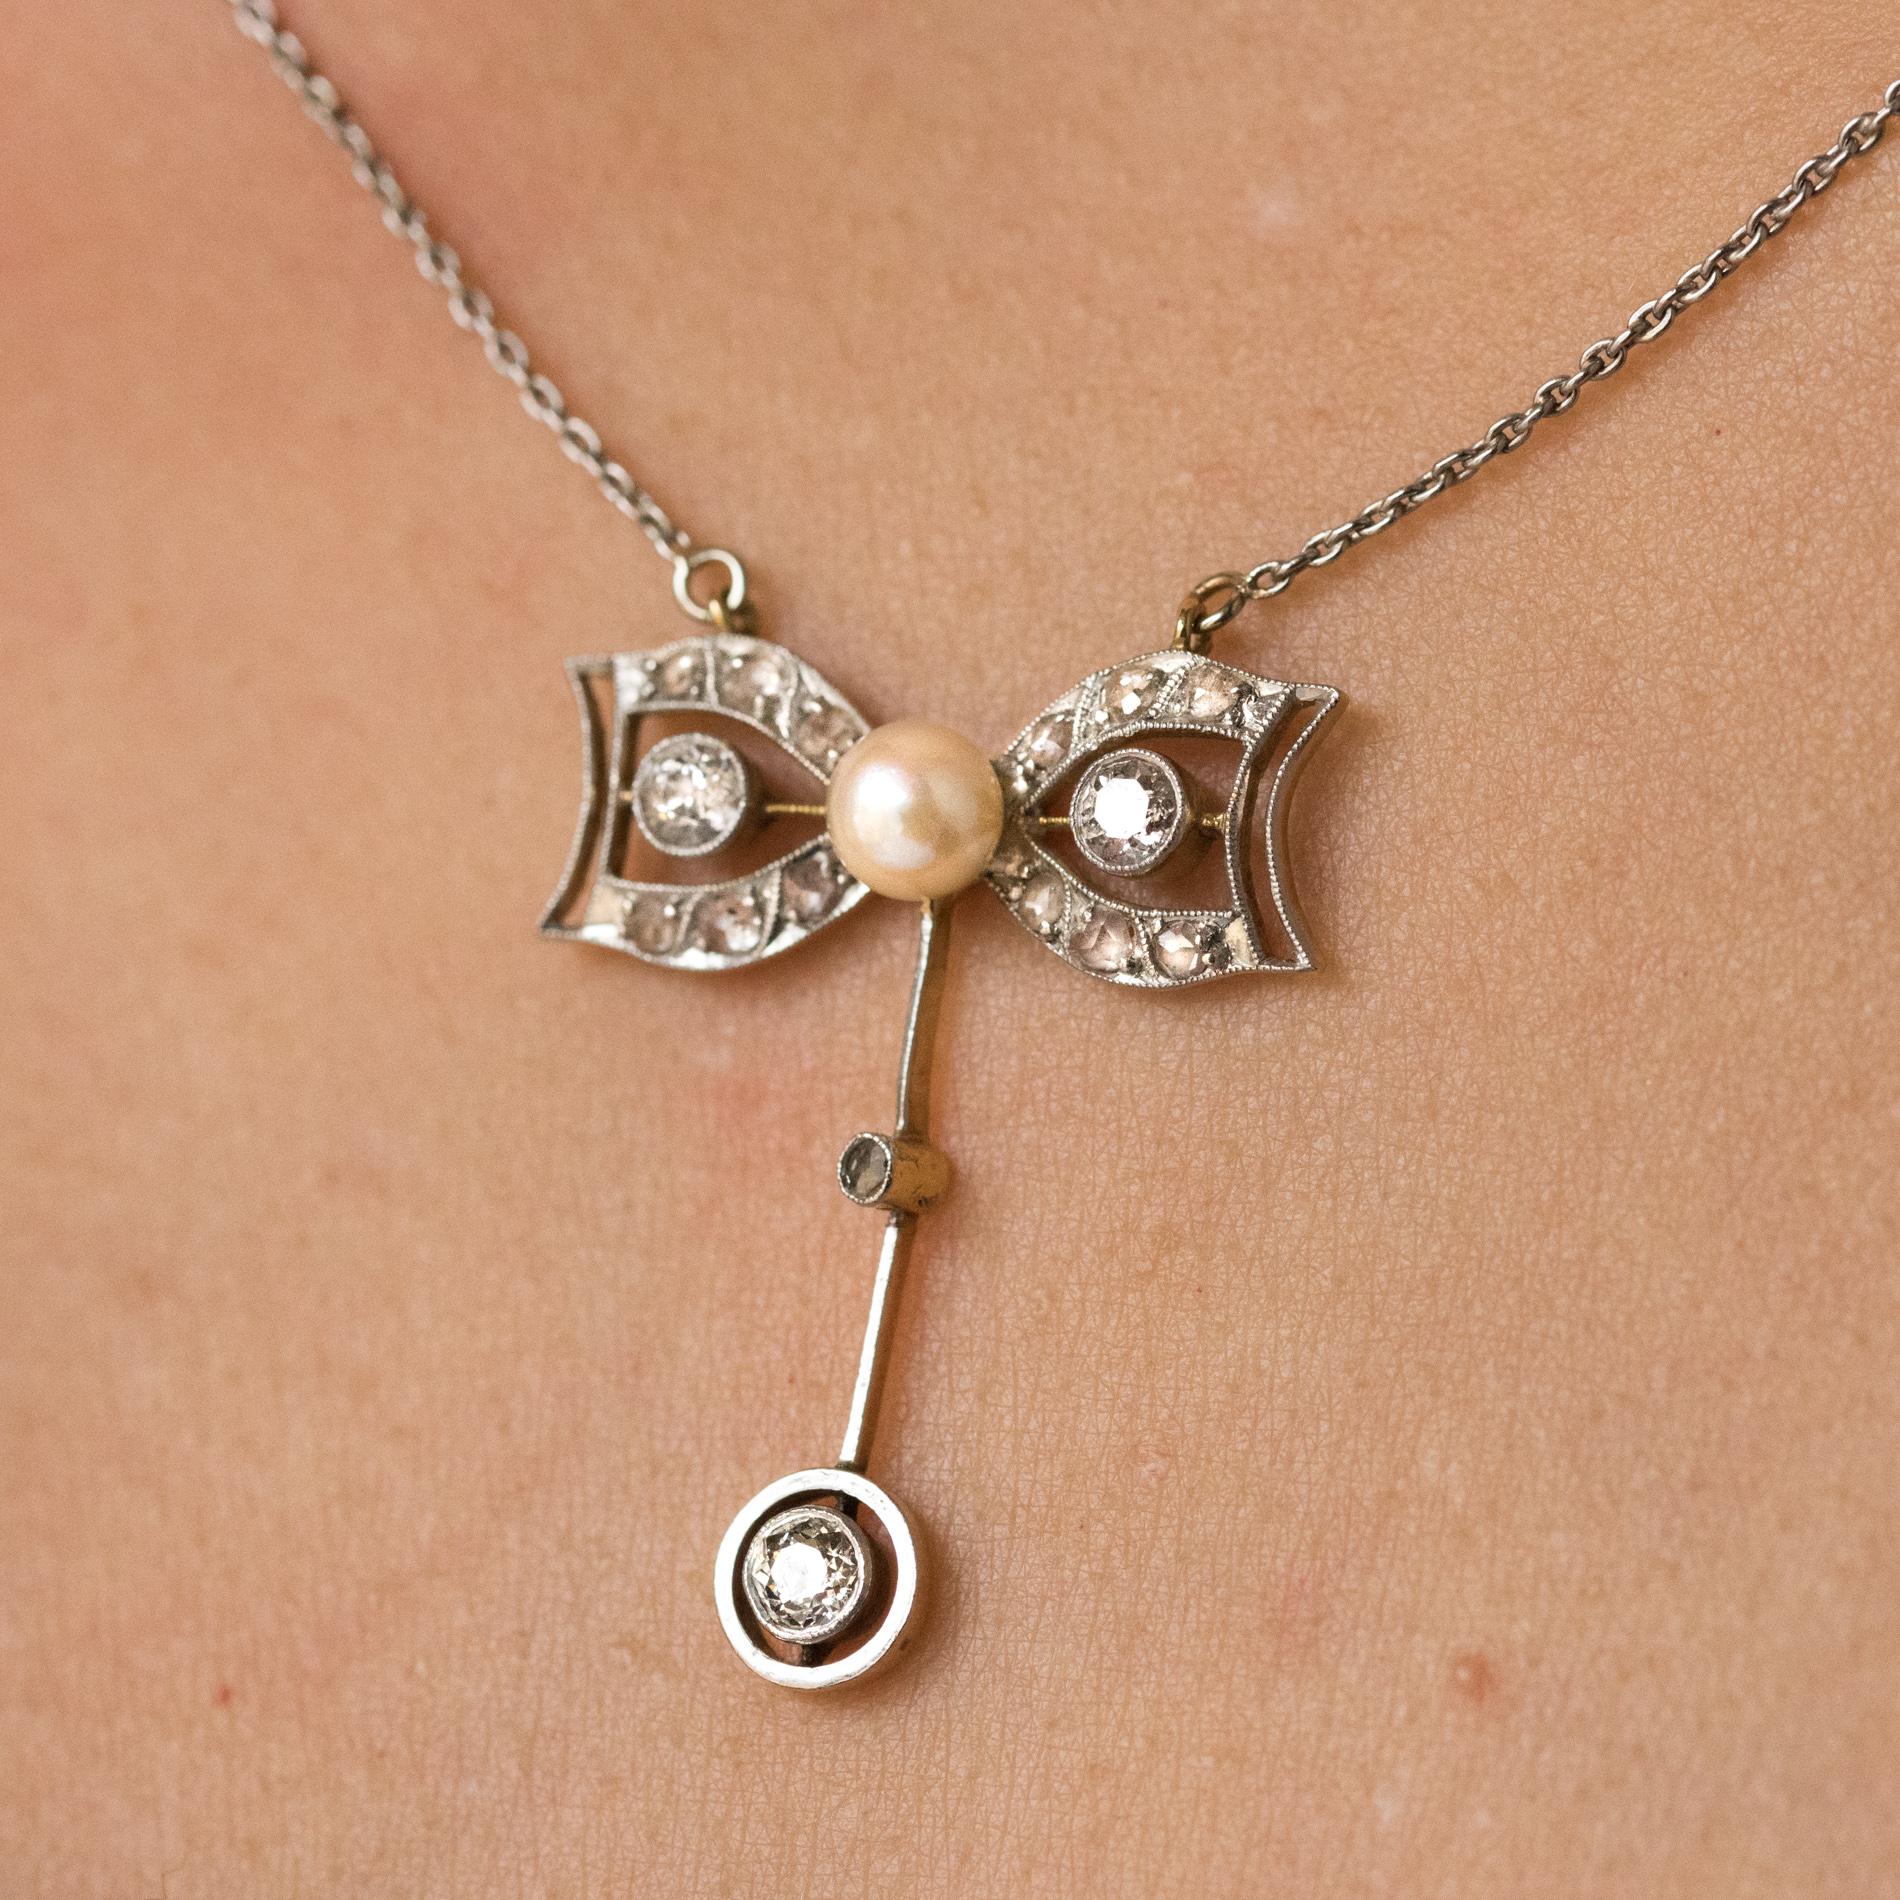 Belle Époque 1920s French Belle Epoque Diamond Cultured Pearl Gold Pendant Necklace